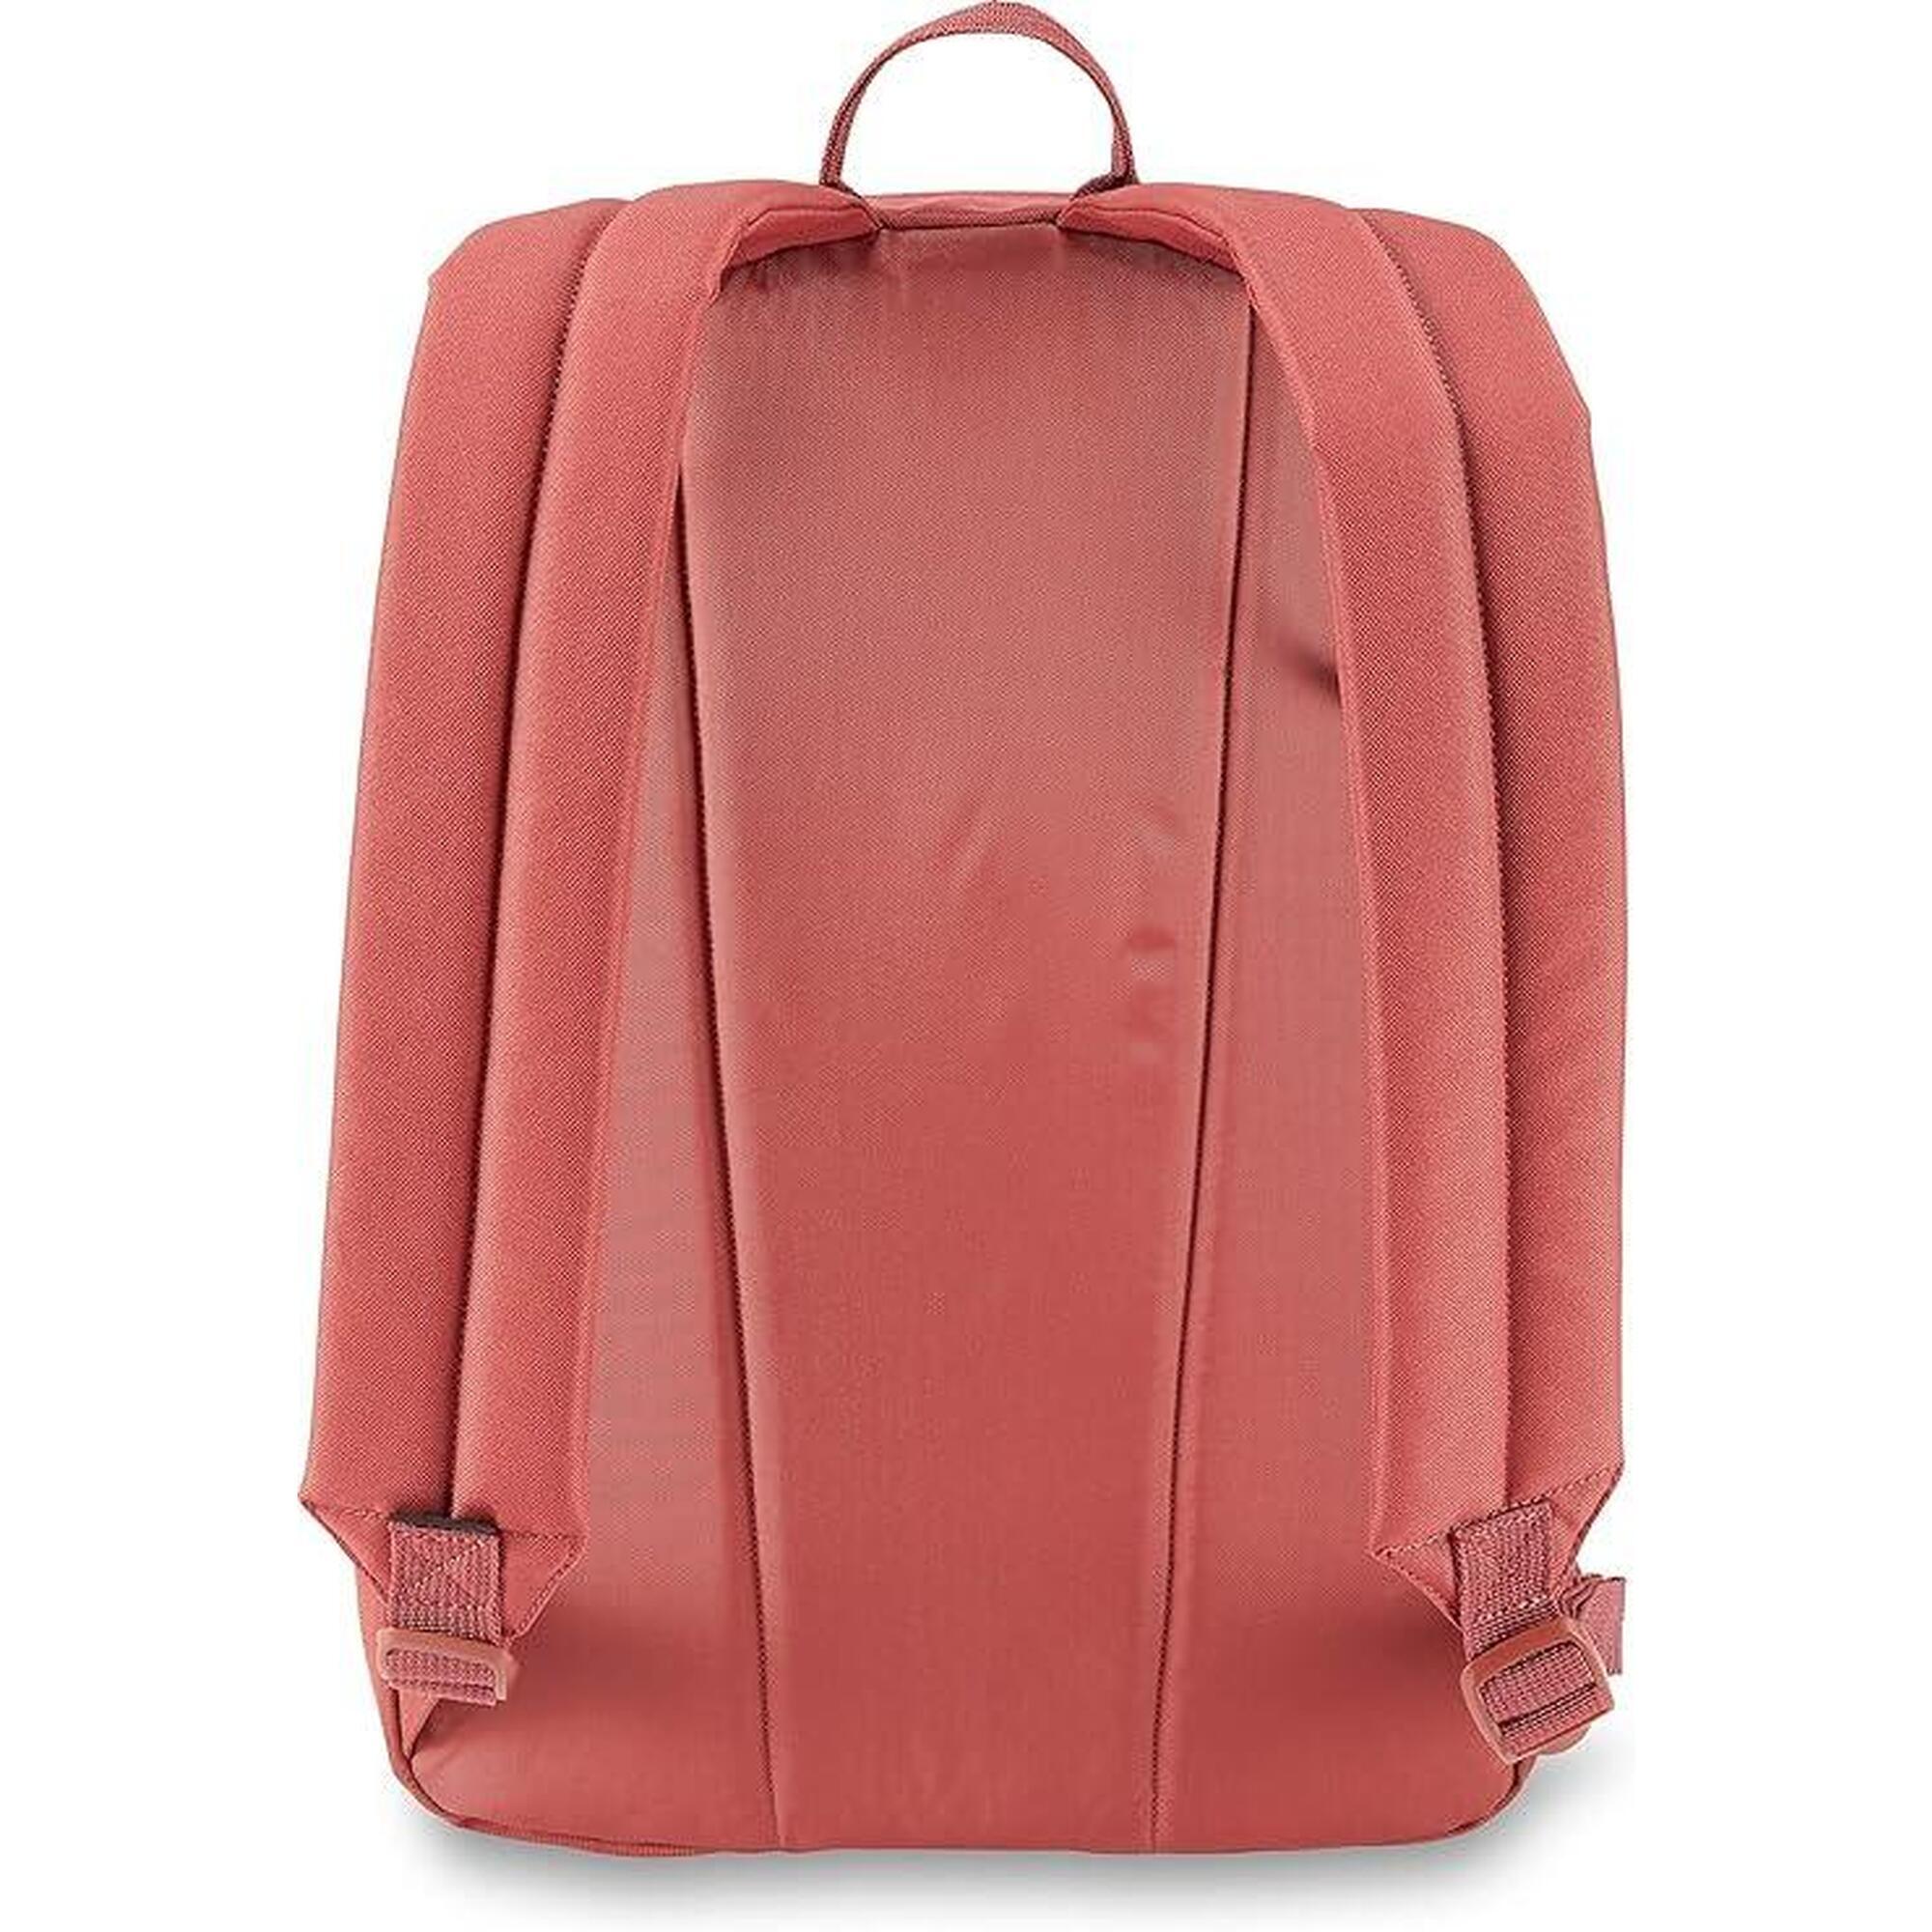 Plecak miejski Dakine 365 Pack czerwony na laptopa 21L